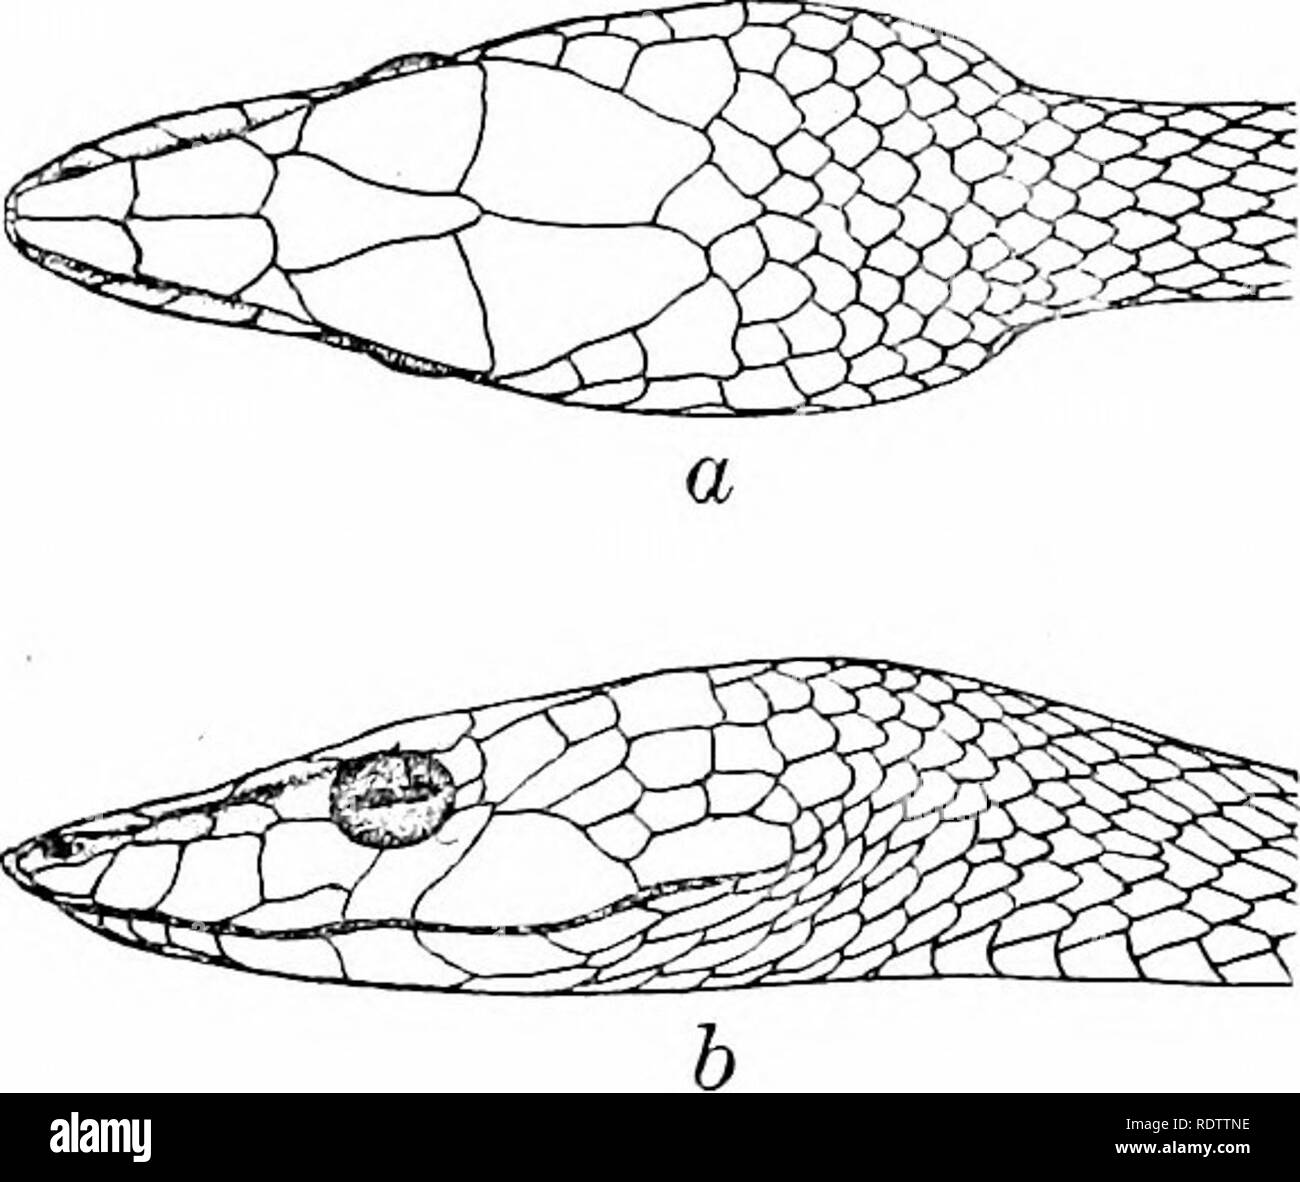 . Les serpents des Îles Philippines. Les serpents. DRYOPHIS 223. Kin. 19. Drijophis prcnculoris sp. nov. Dessin ; d'un spécimen : Polillo ; une tête, iev dorsale. ; h, colle, vue latérale frontale- au moins une fois et demie plus longs que larges ; très étroit derrière ; dans sa partie la plus large il n'est pas égale à la largeur d'supraoculars ; des pariétaux grand et allongé ; supraoculars et grande projection, de sorte que l'œil est à peine visible d'en haut ; rostralis canthus très forte ; 2 grandes, preoculars supraoculars la séparant de prefrontals ; 2, la plus grande partie postérieure loreals narine ; dans une très étroite, très allongées na Banque D'Images